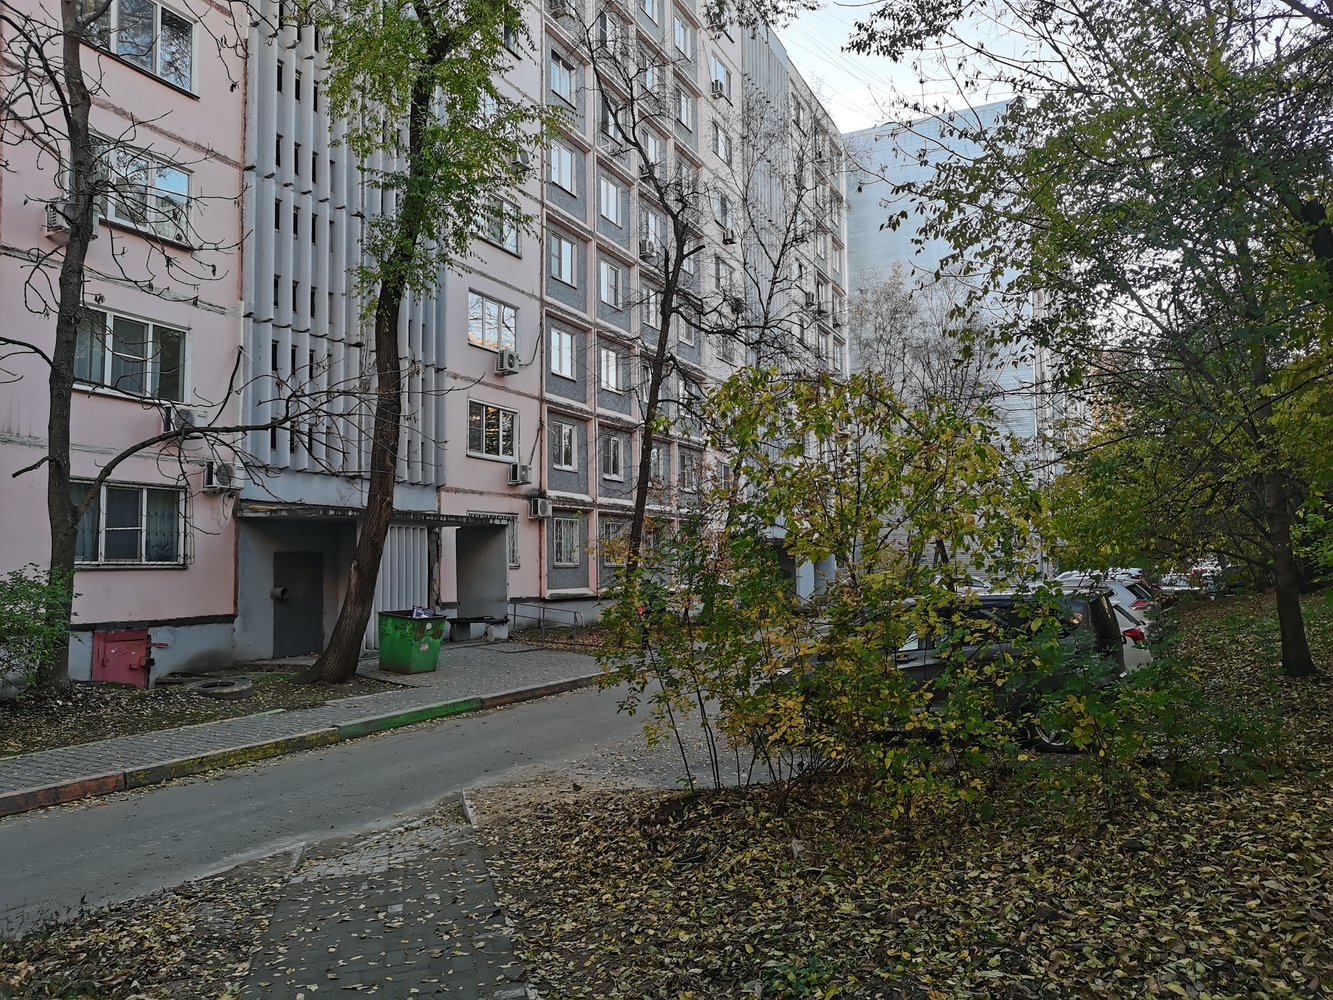 Улица в центре Хабаровска как напоминание о Гражданской войне